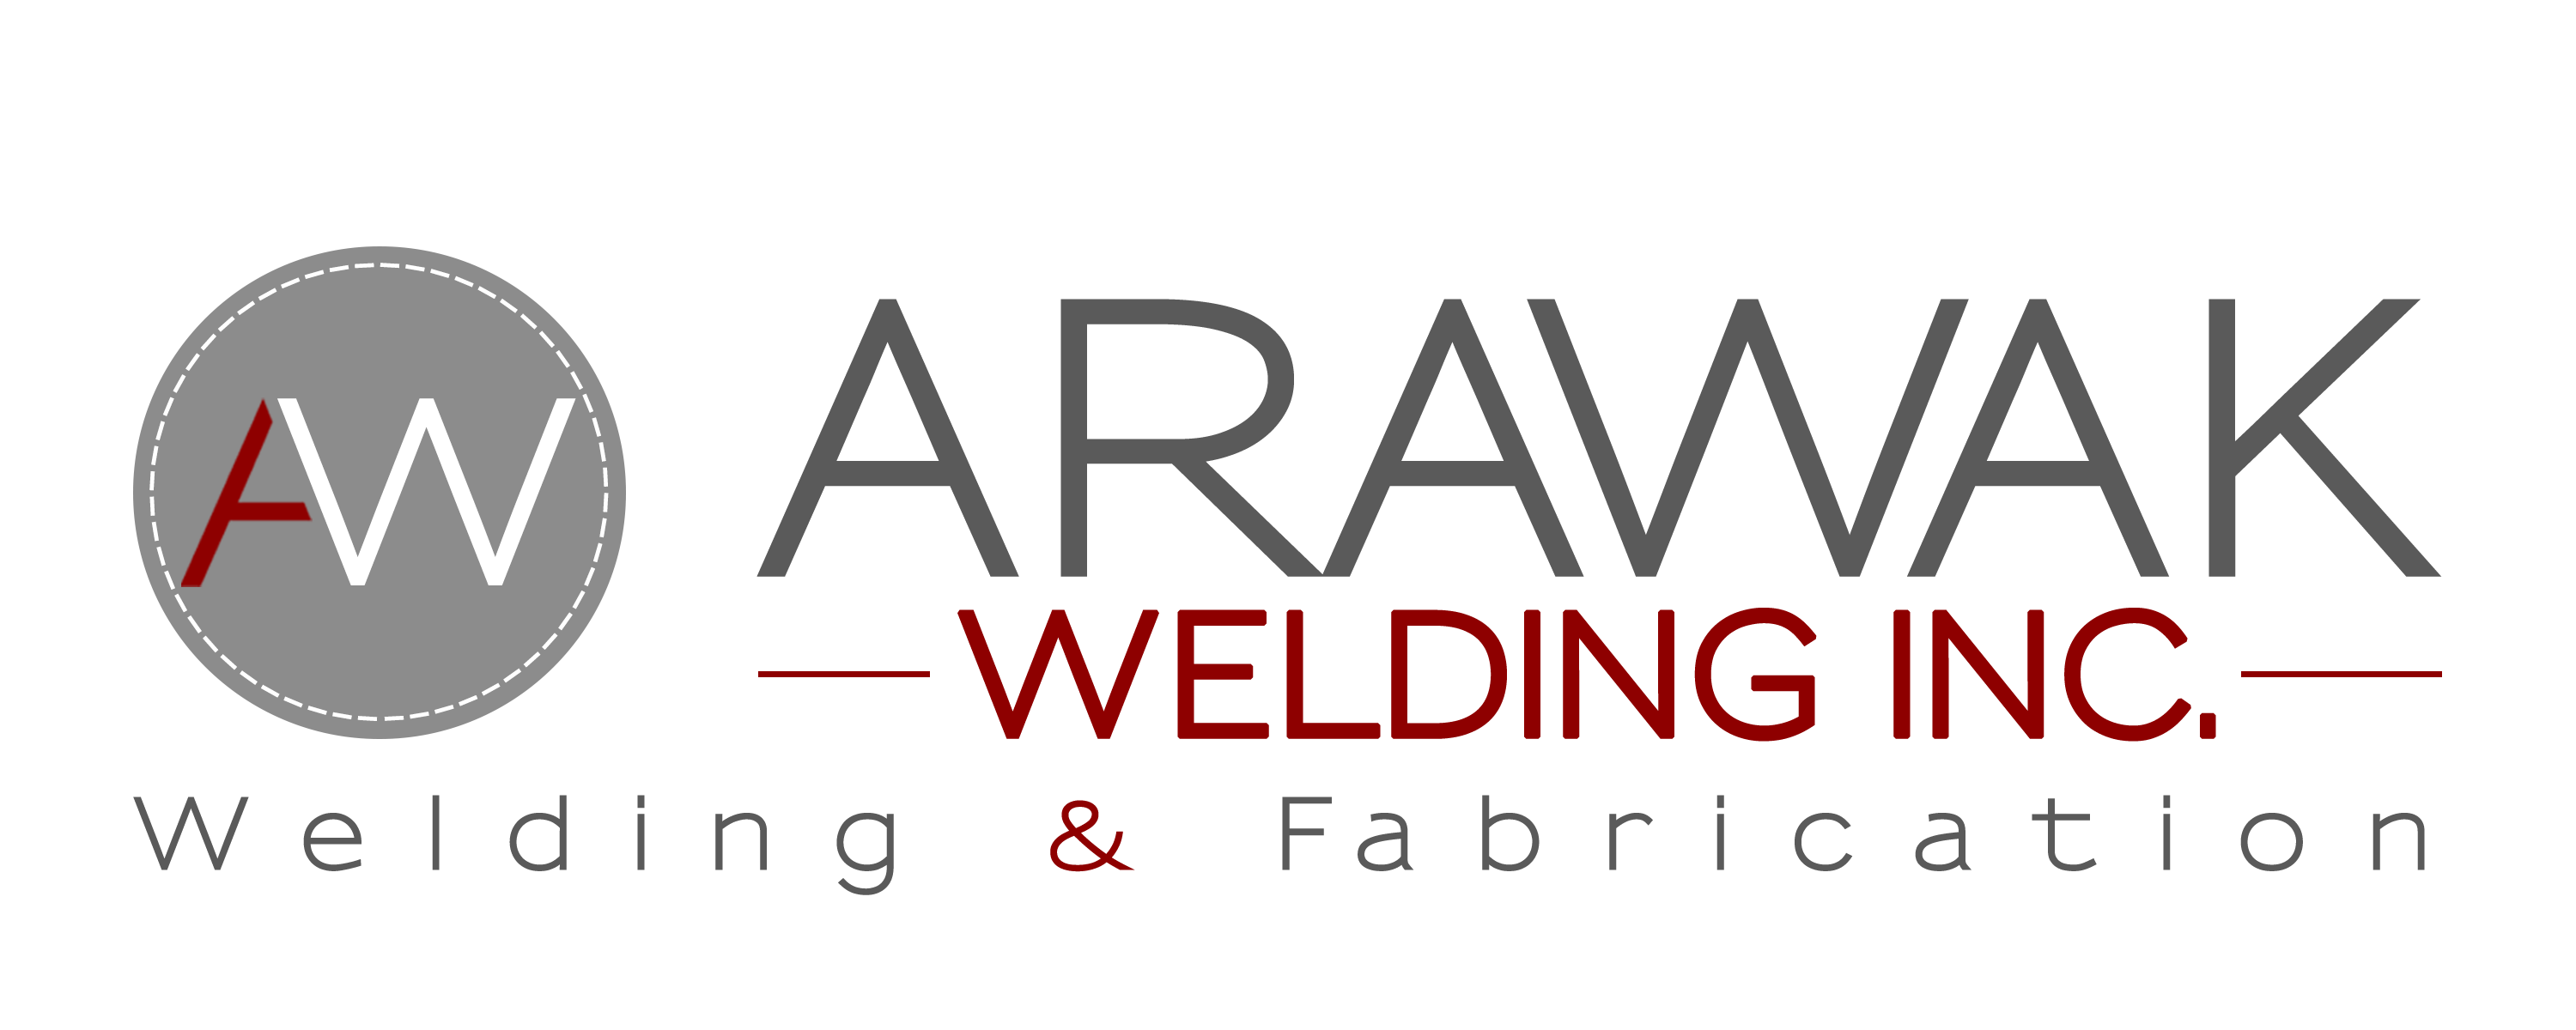 Arawak Welding Inc.